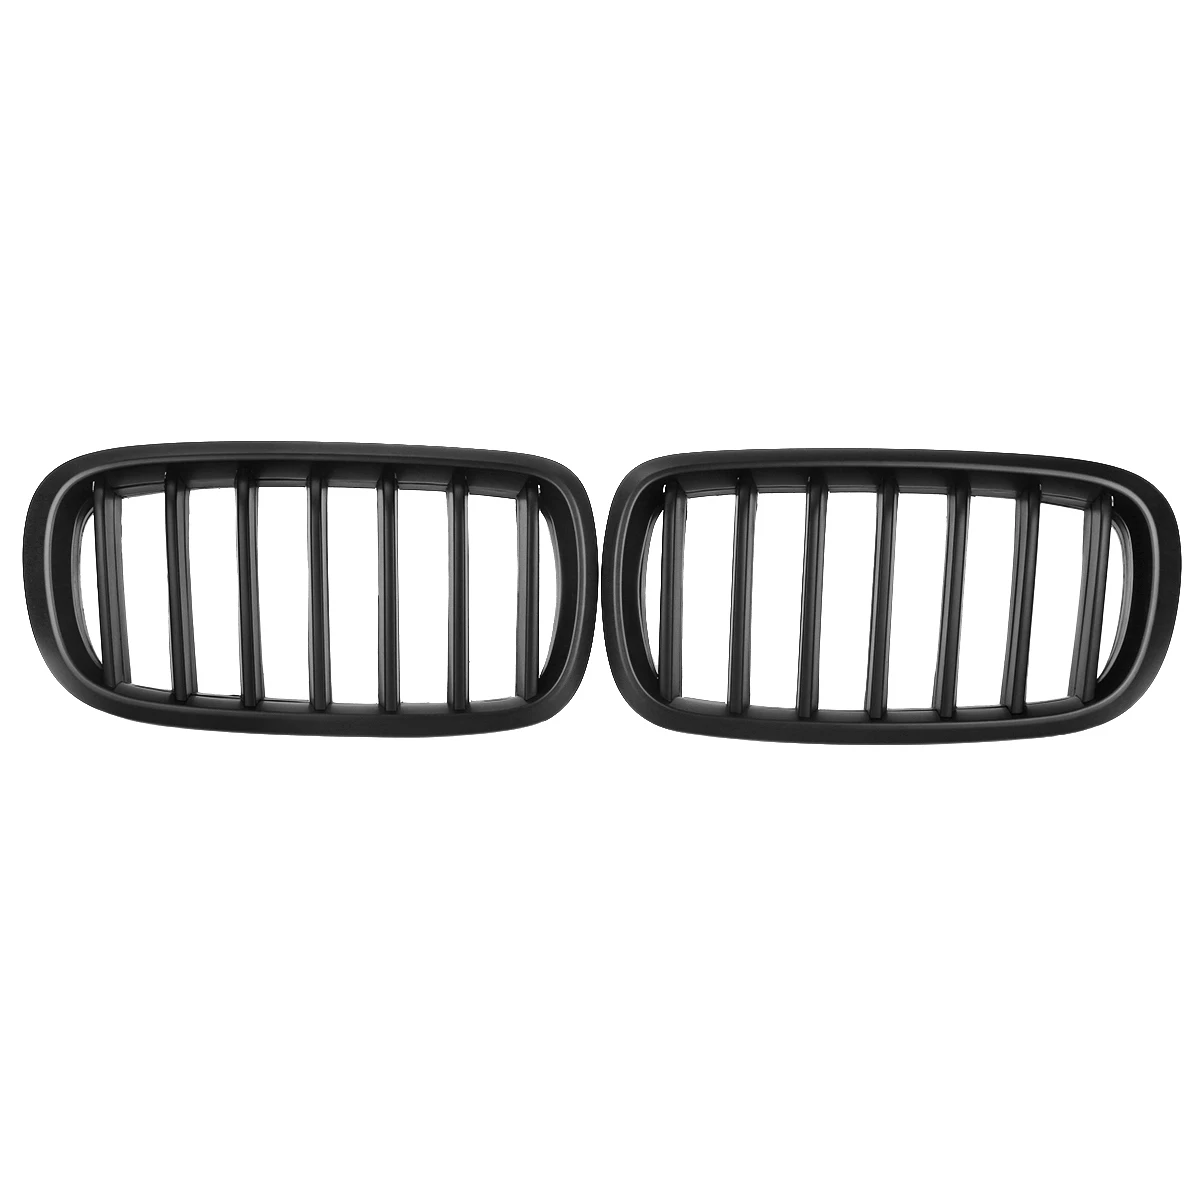 Автомобильные глянцевые матовые черные Передние решетки для BMW X5 F15 X6 F16 гоночные решетки автомобильный Стайлинг 51712334708